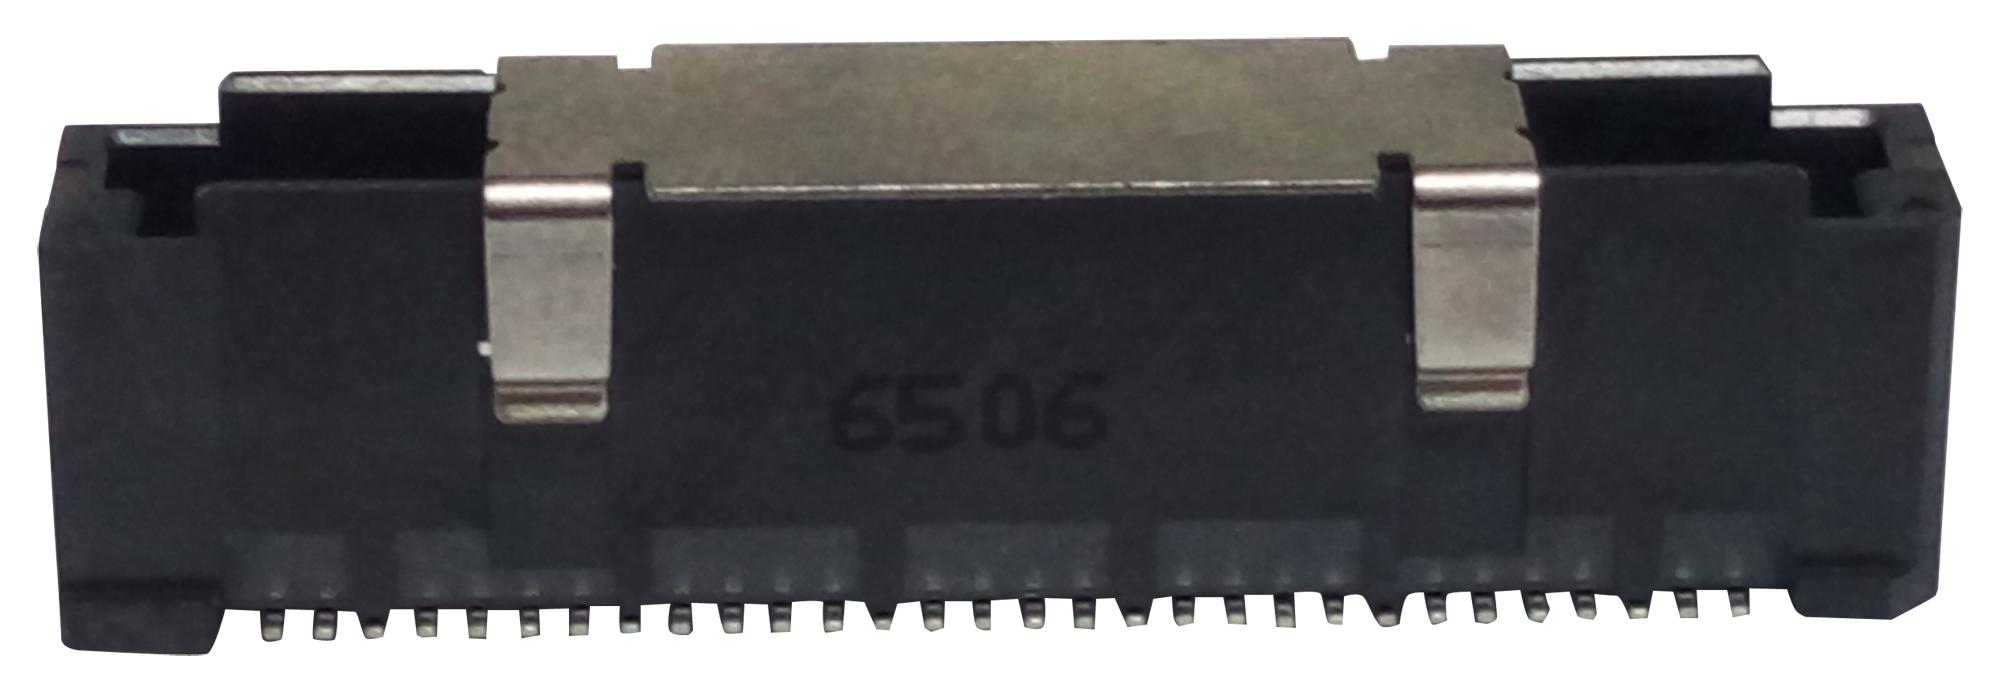 G832MB110605222HR CONNECTOR, PLUG, 60POS, 2ROW, 0.8MM AMPHENOL ICC